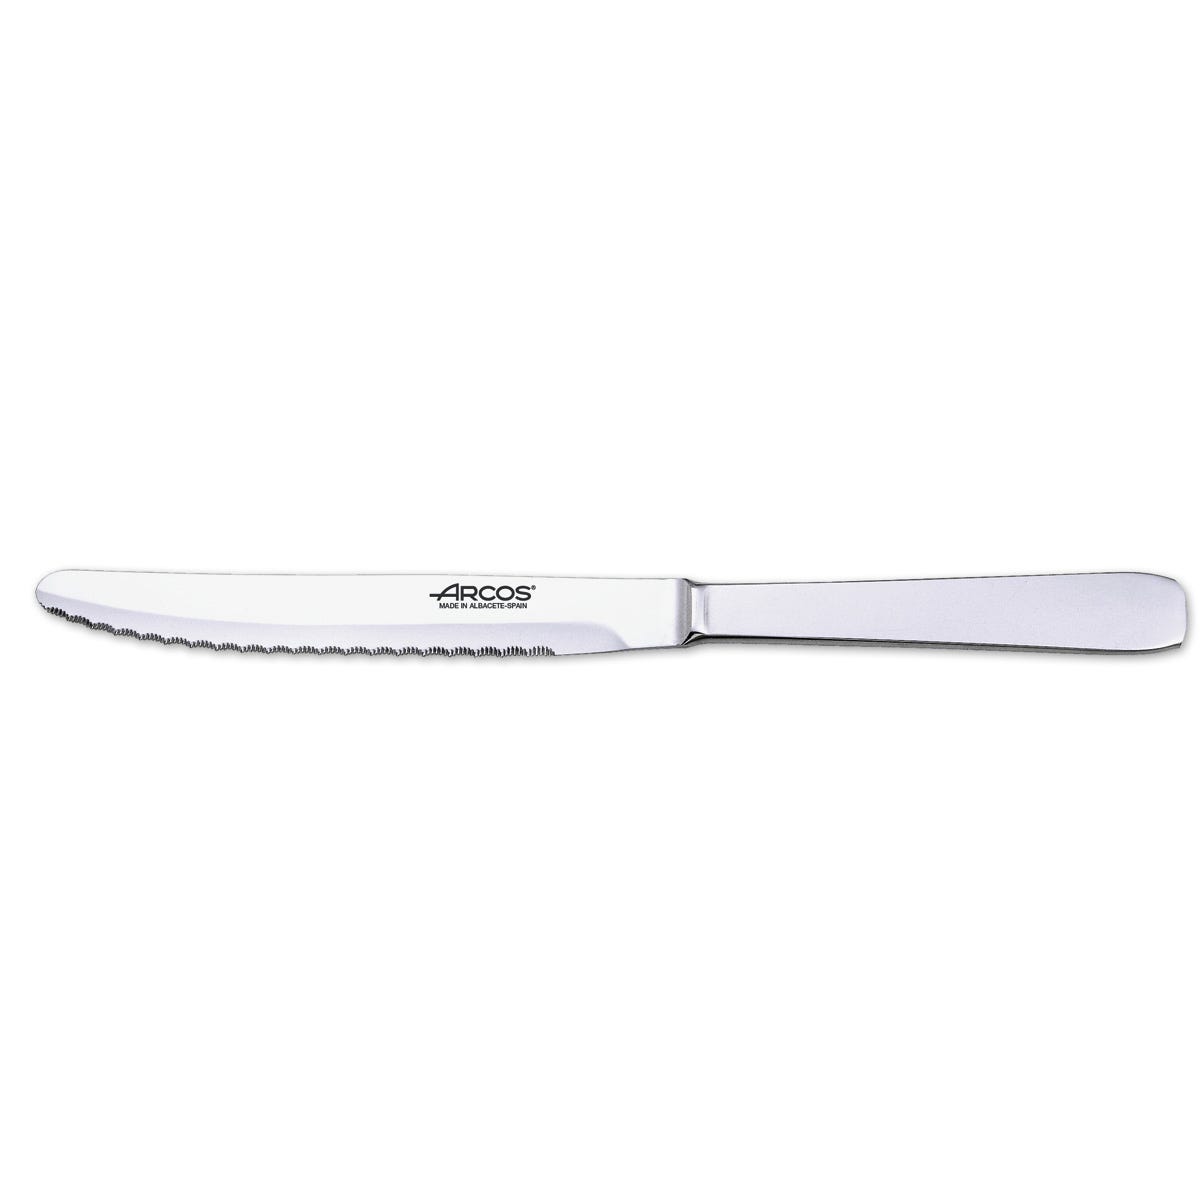 Cuchillo de mesa Arcos de Mesa 460400 monoblock de una pieza de